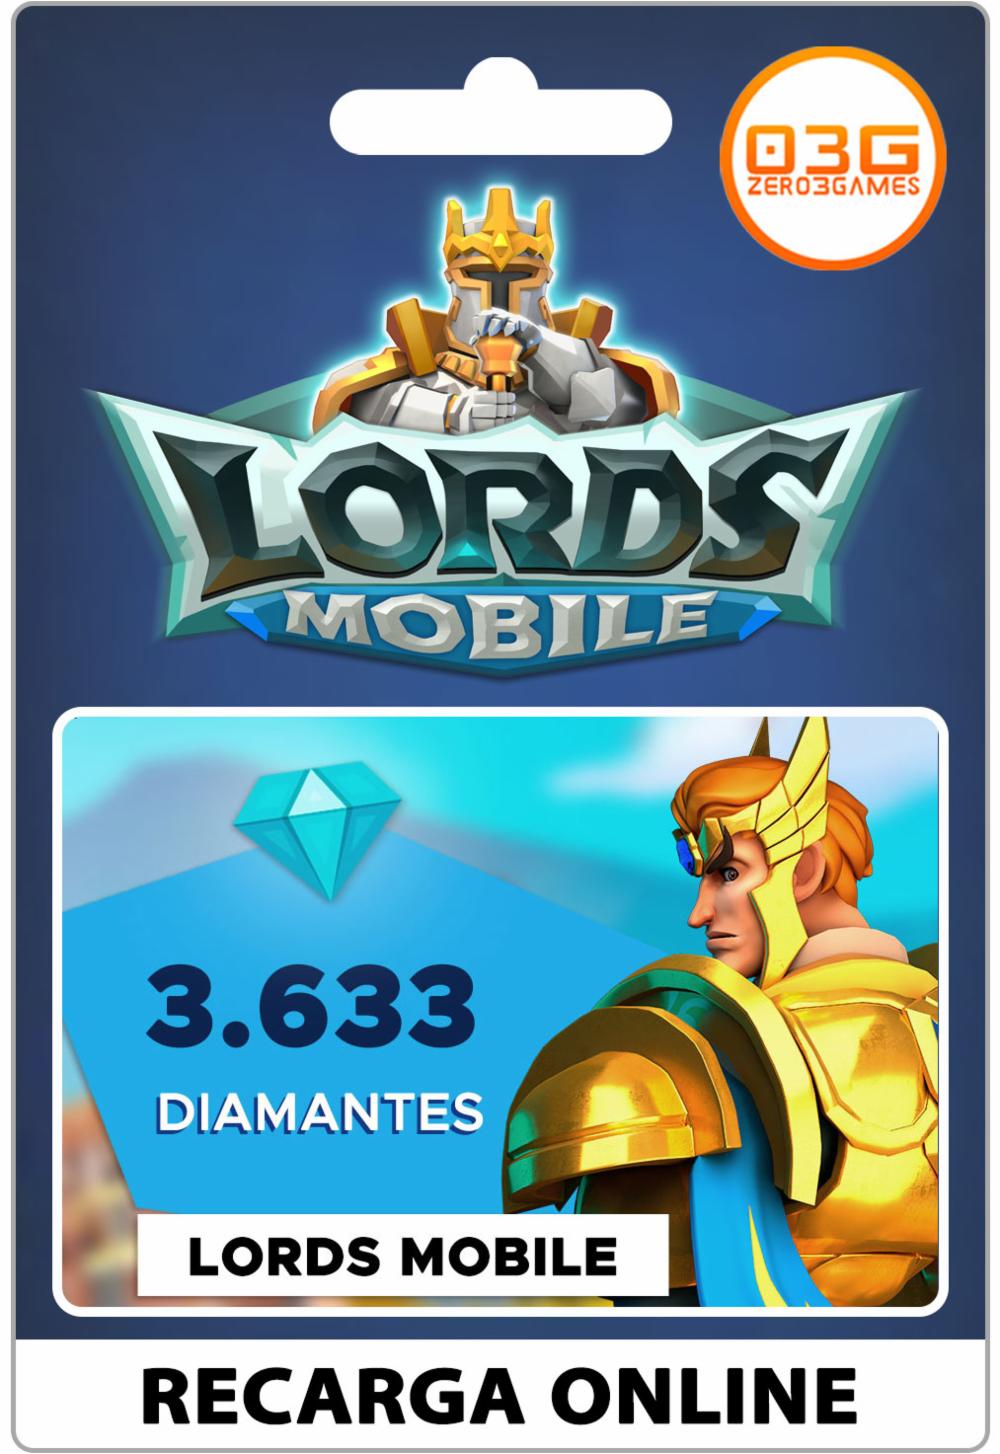 Lords Mobile - Baixe o <Lords Mobile> Pacote de Diamantes para acessar mais  métodos de pagamento!😀 Aprimore sua experiência no Lords Mobile com a mais  nova moeda: Diamantes! Use os Diamantes para